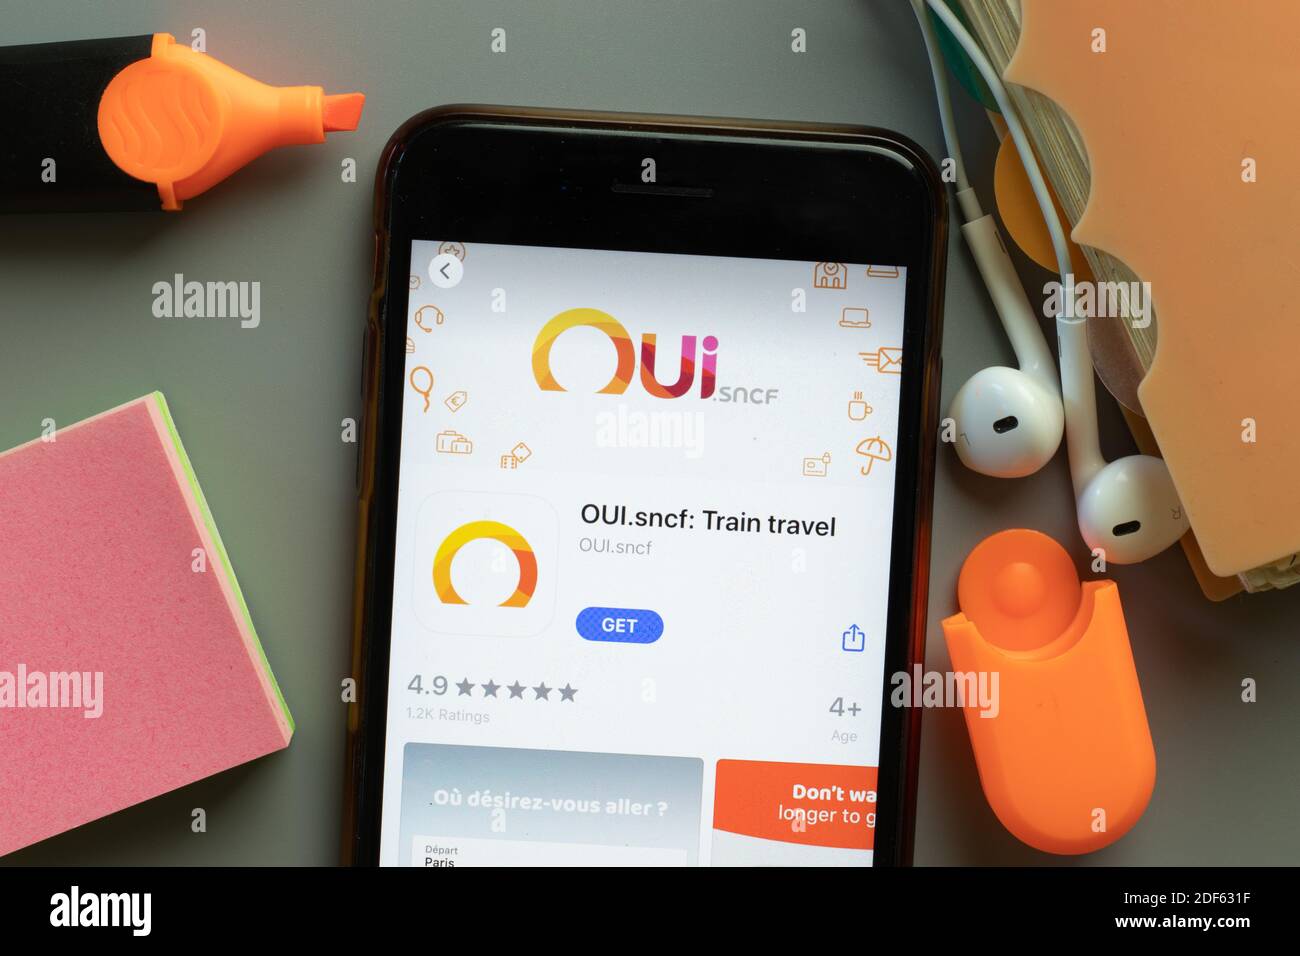 New York, USA - 1 dicembre 2020: Icona dell'app mobile OUI.sncf Train Travel sullo schermo del telefono vista dall'alto, editoriale illustrativo. Foto Stock